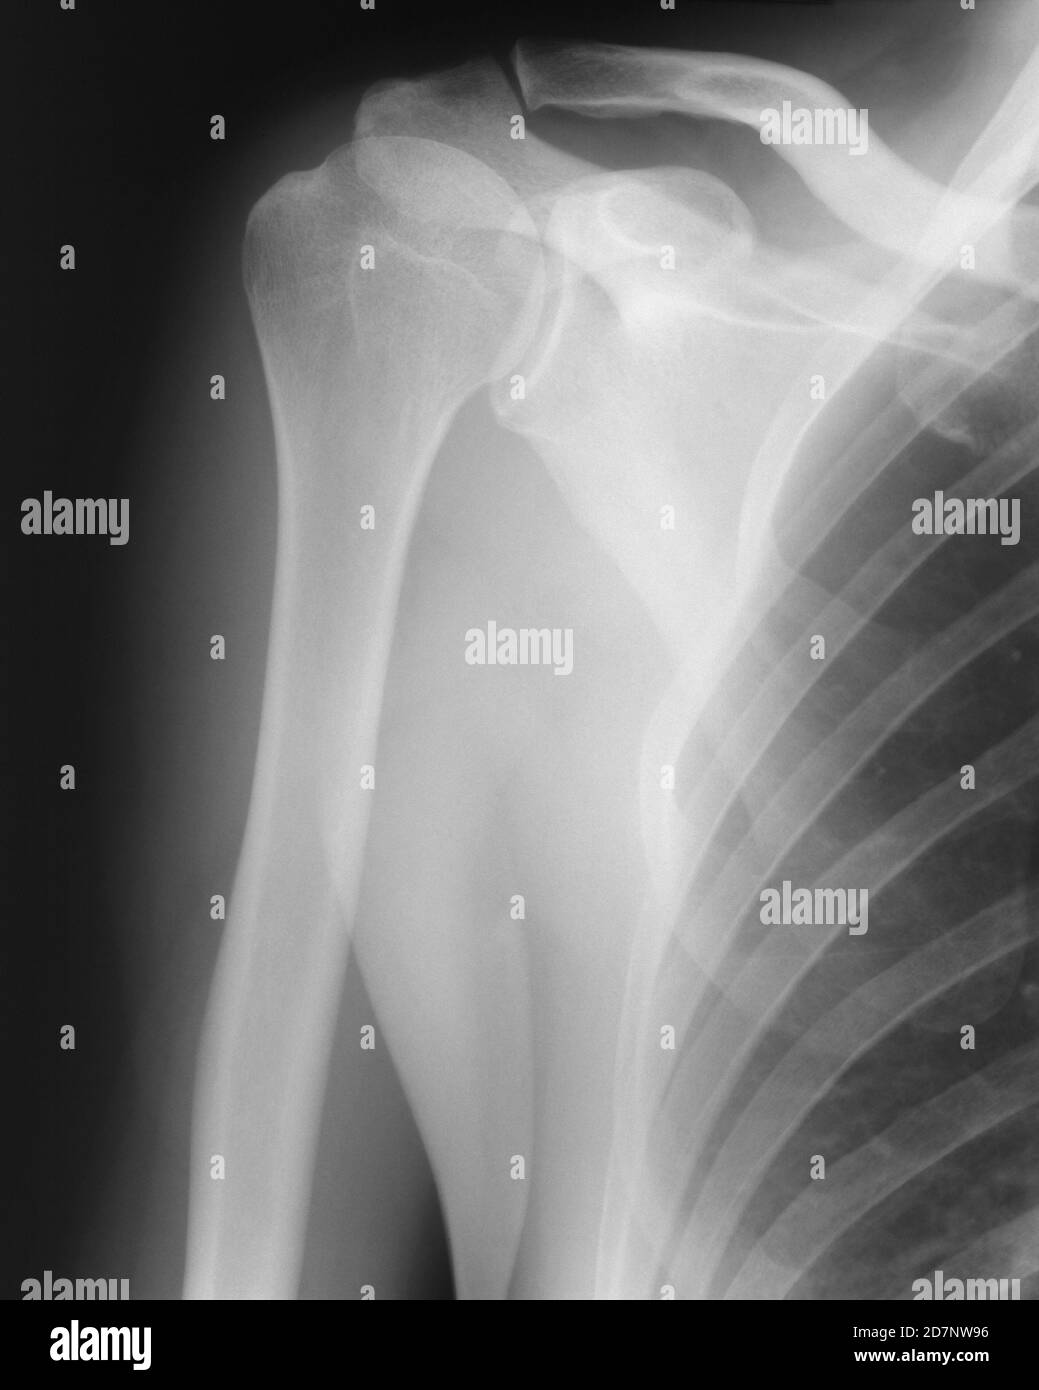 Imagen de rayos X del hombro derecho. Foto de stock